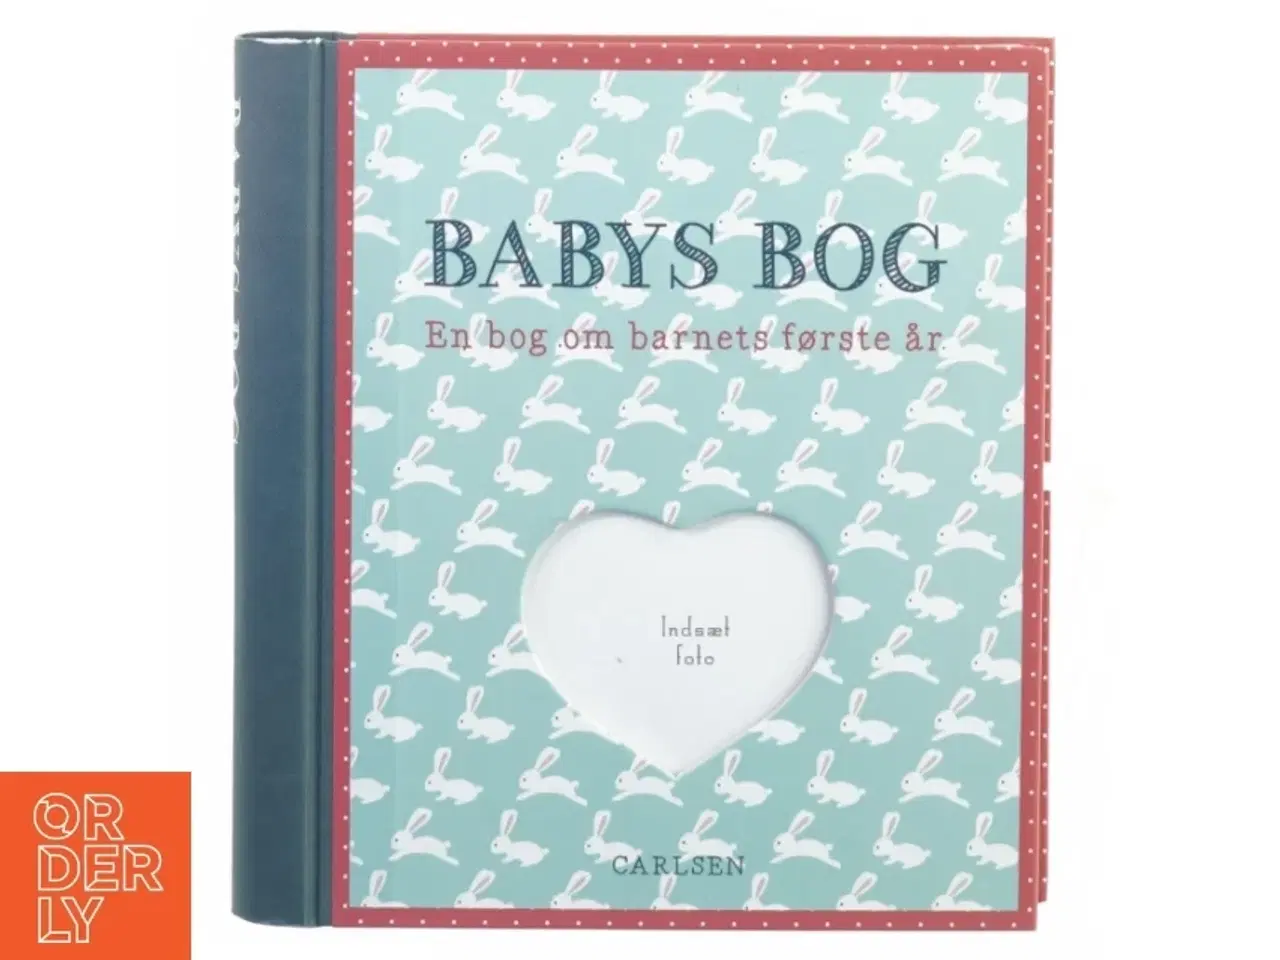 Billede 1 - Babys bog, en bog om barnets første år fra Carlsen Egmont (str. 22 x 24 gang i 3 cm)